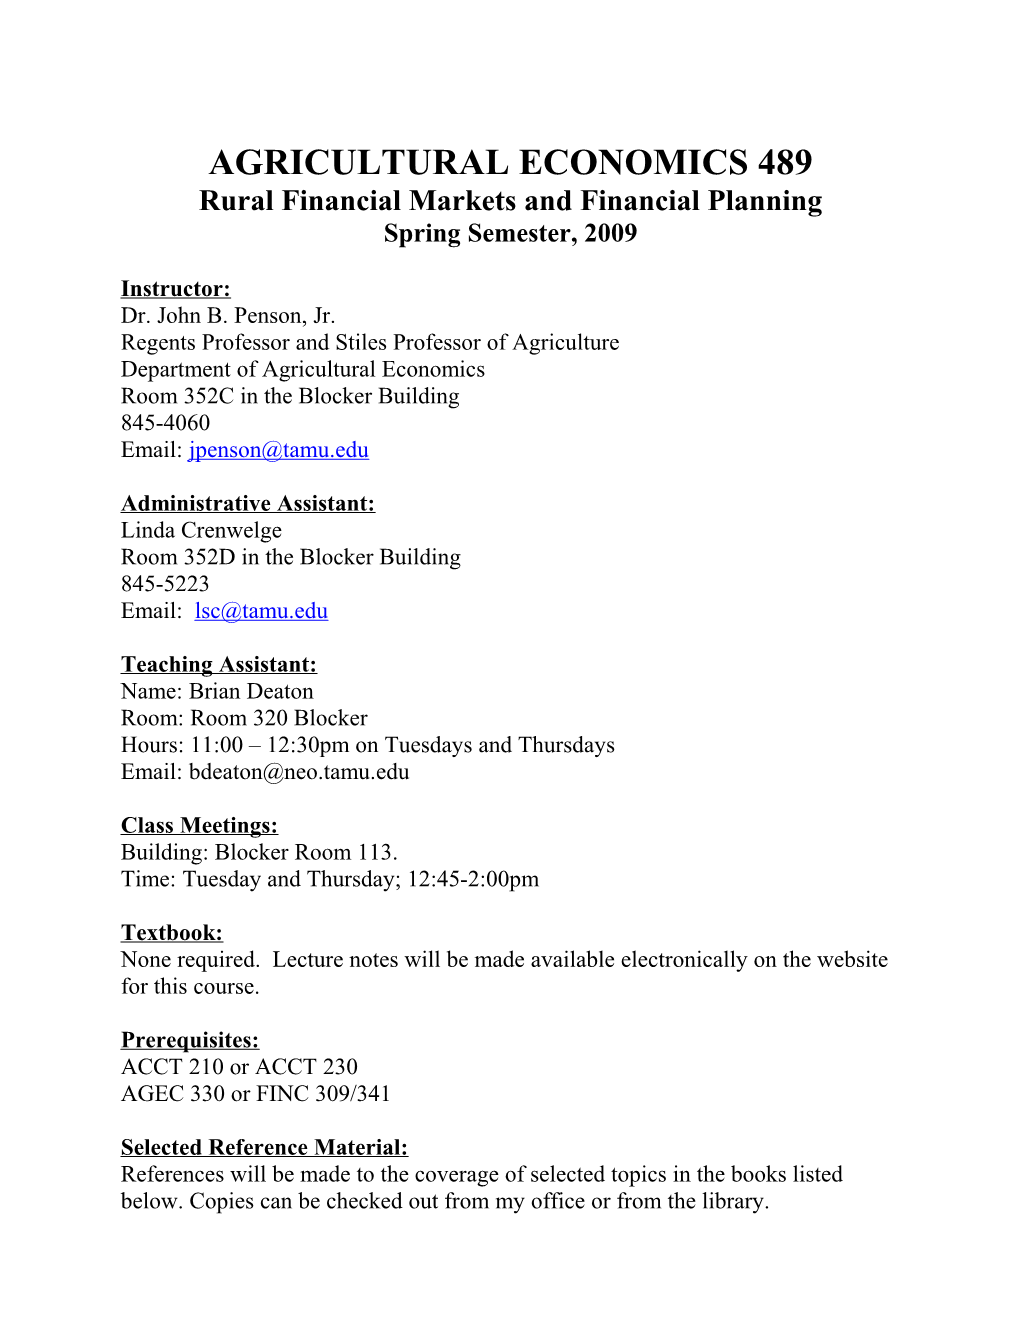 Agricultural Economics 489